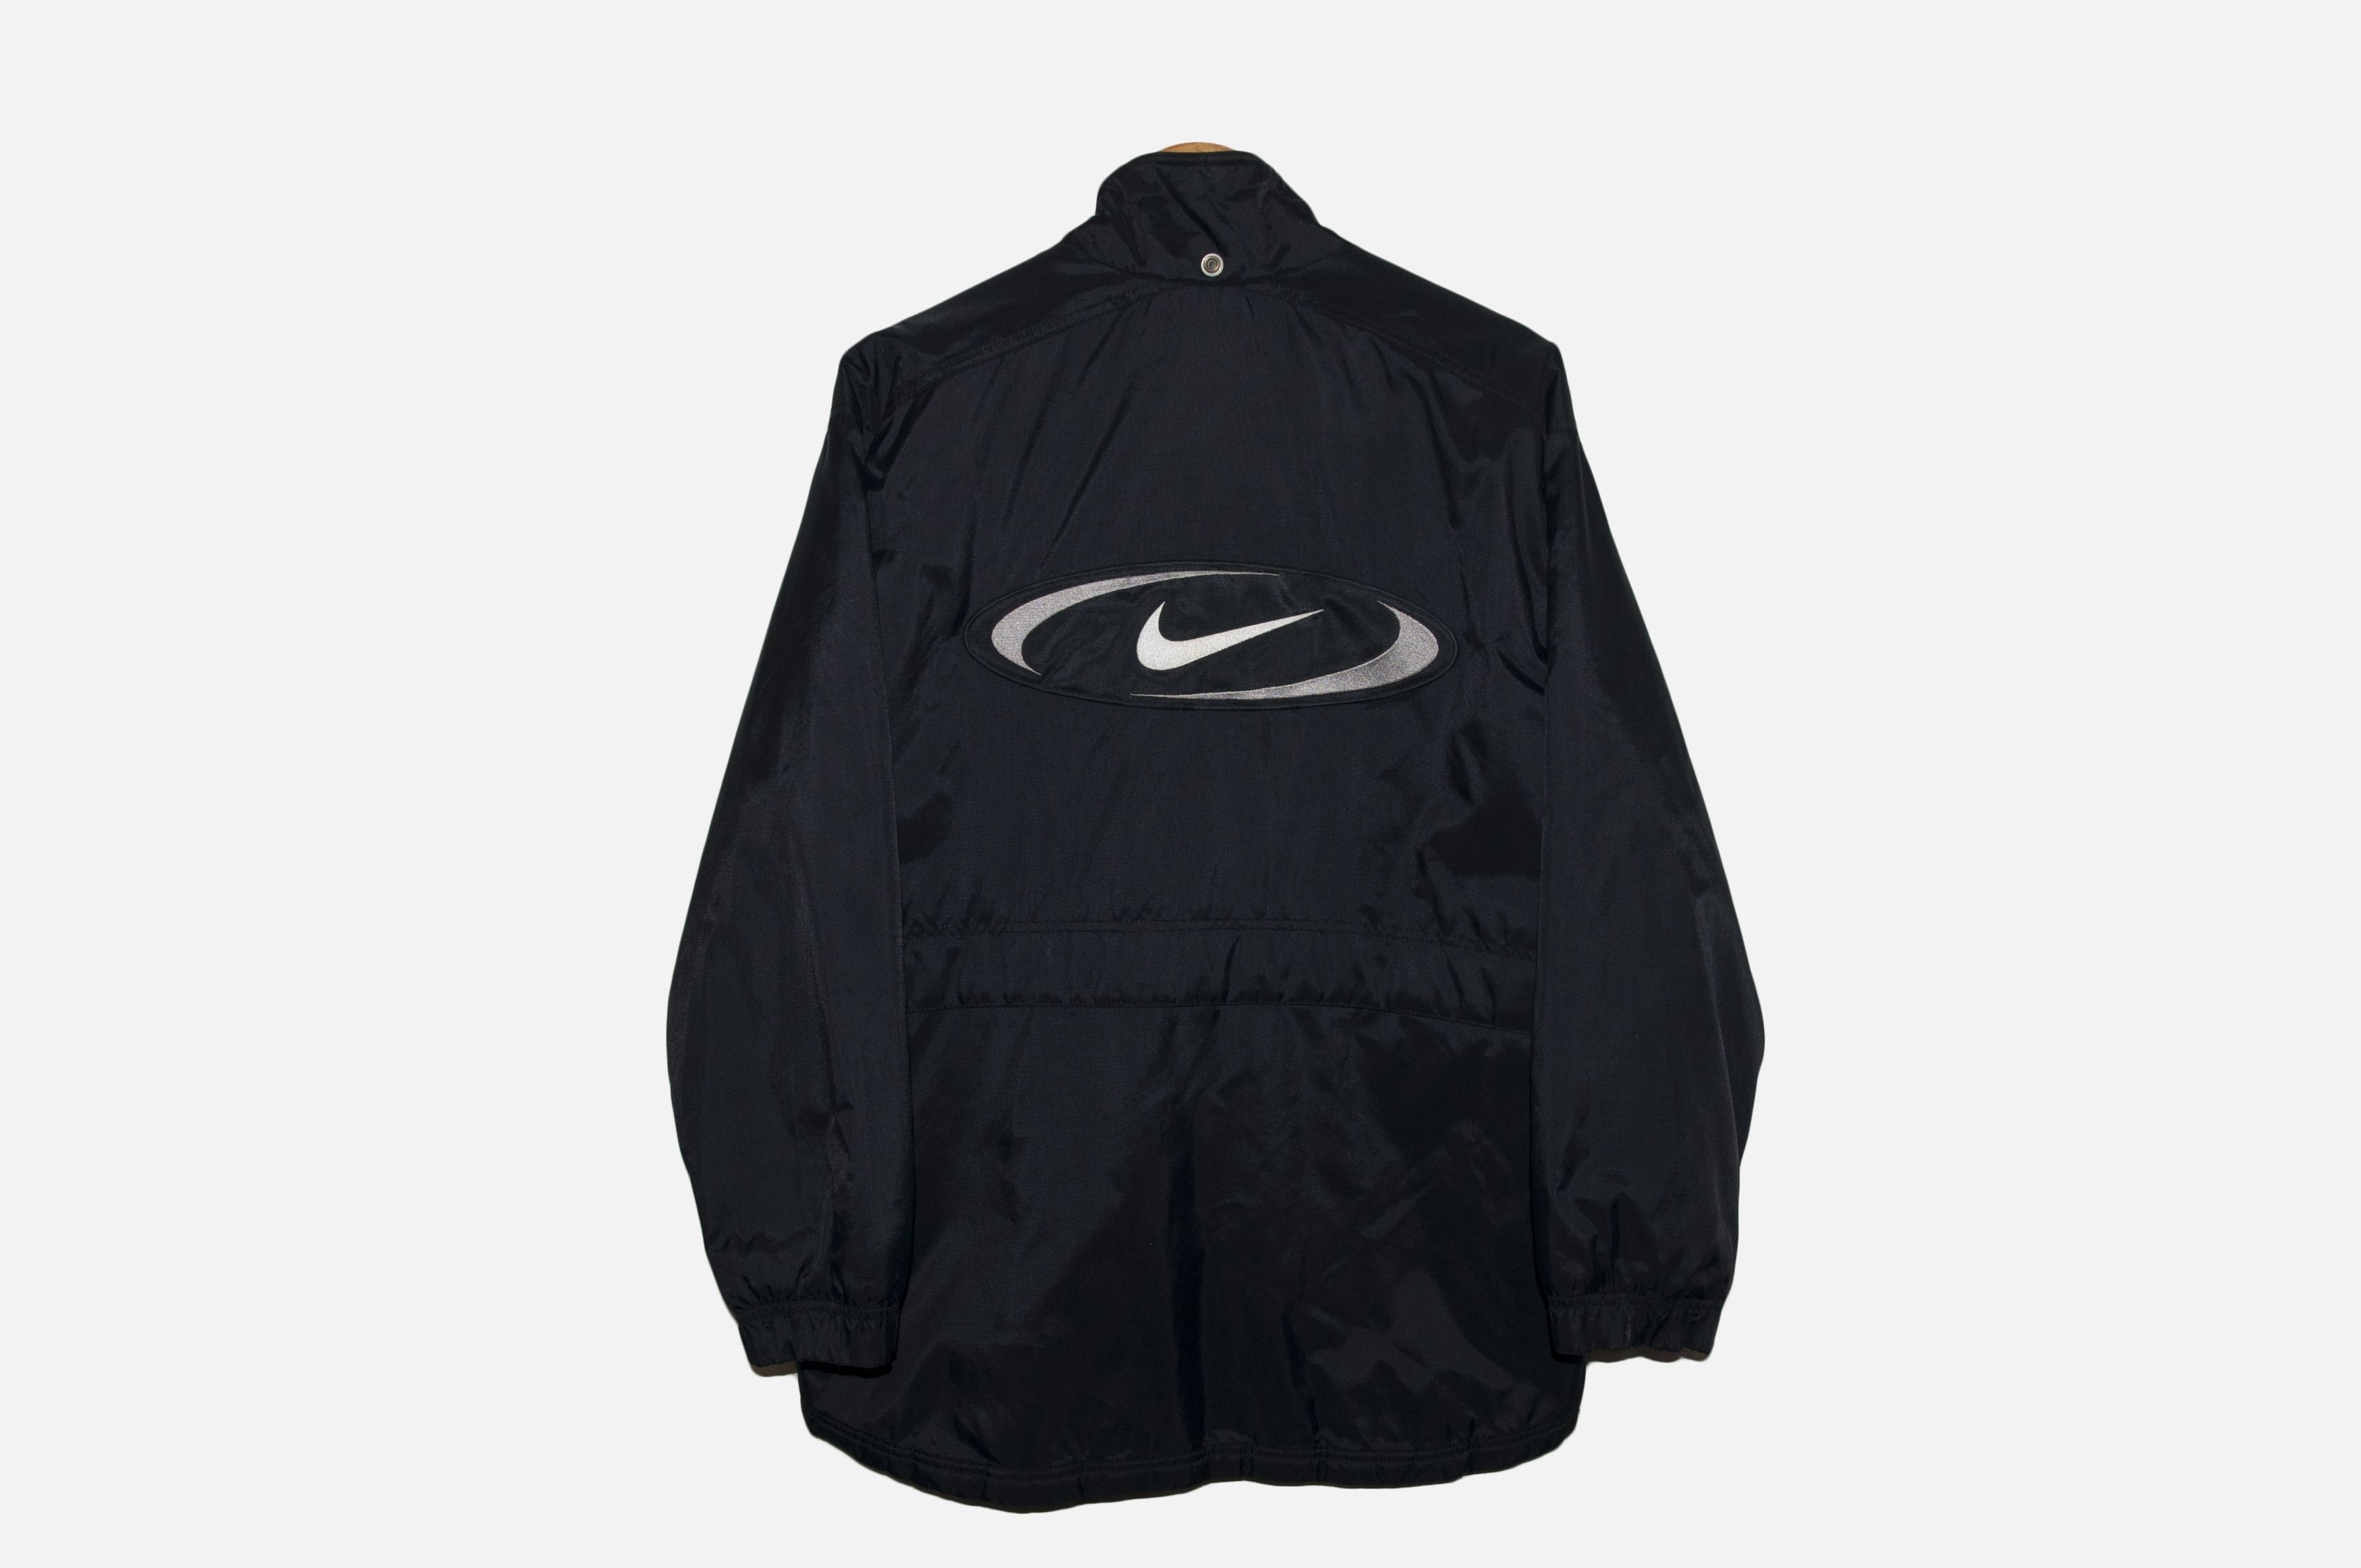 Nike vintage Nike mens Nylon Track Jacket Black White Retro 90s Size US S / EU 44-46 / 1 - 1 Preview